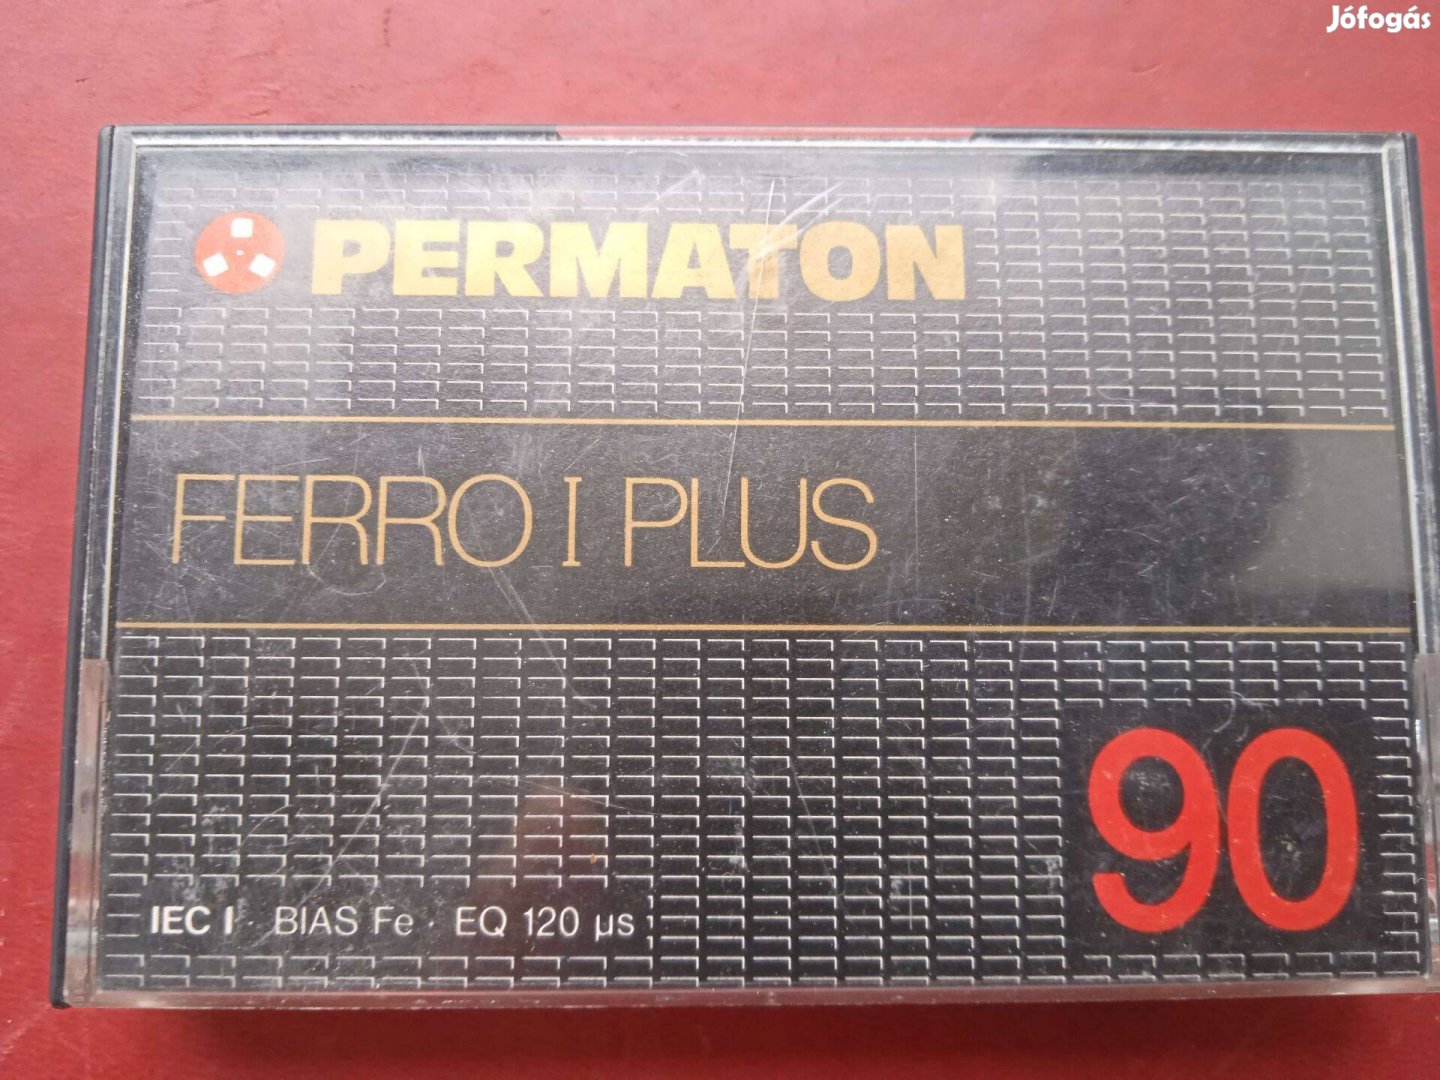 Permaton Ferro I PLUS 90 retro audio kazetta